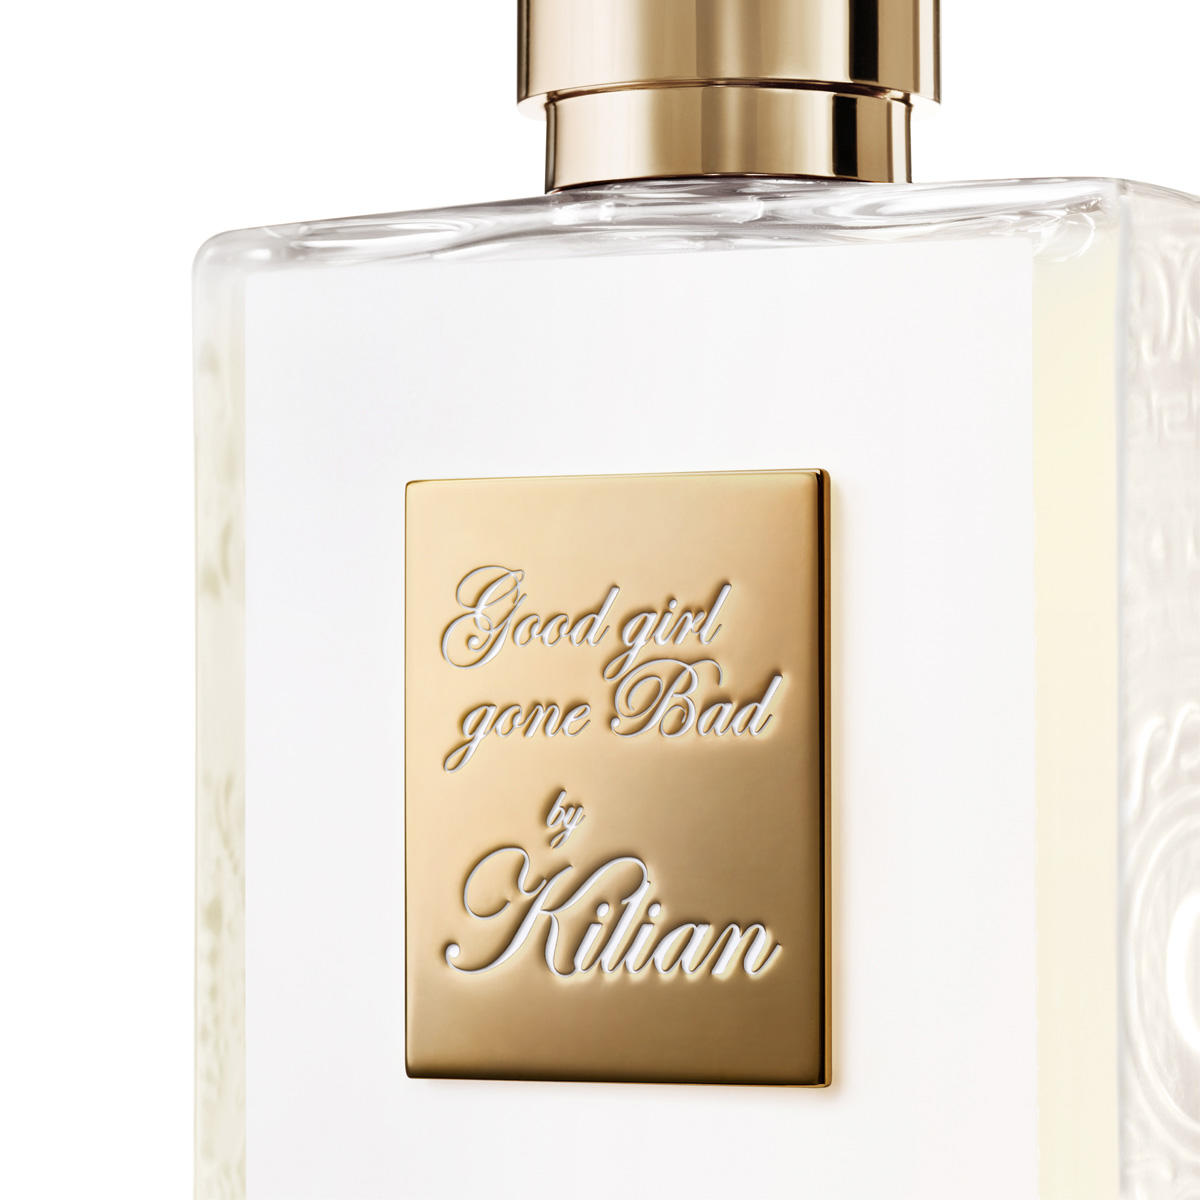 Kilian Paris Good Girl Gone Bad Eau de Parfum rechargeable 50 ml - 2